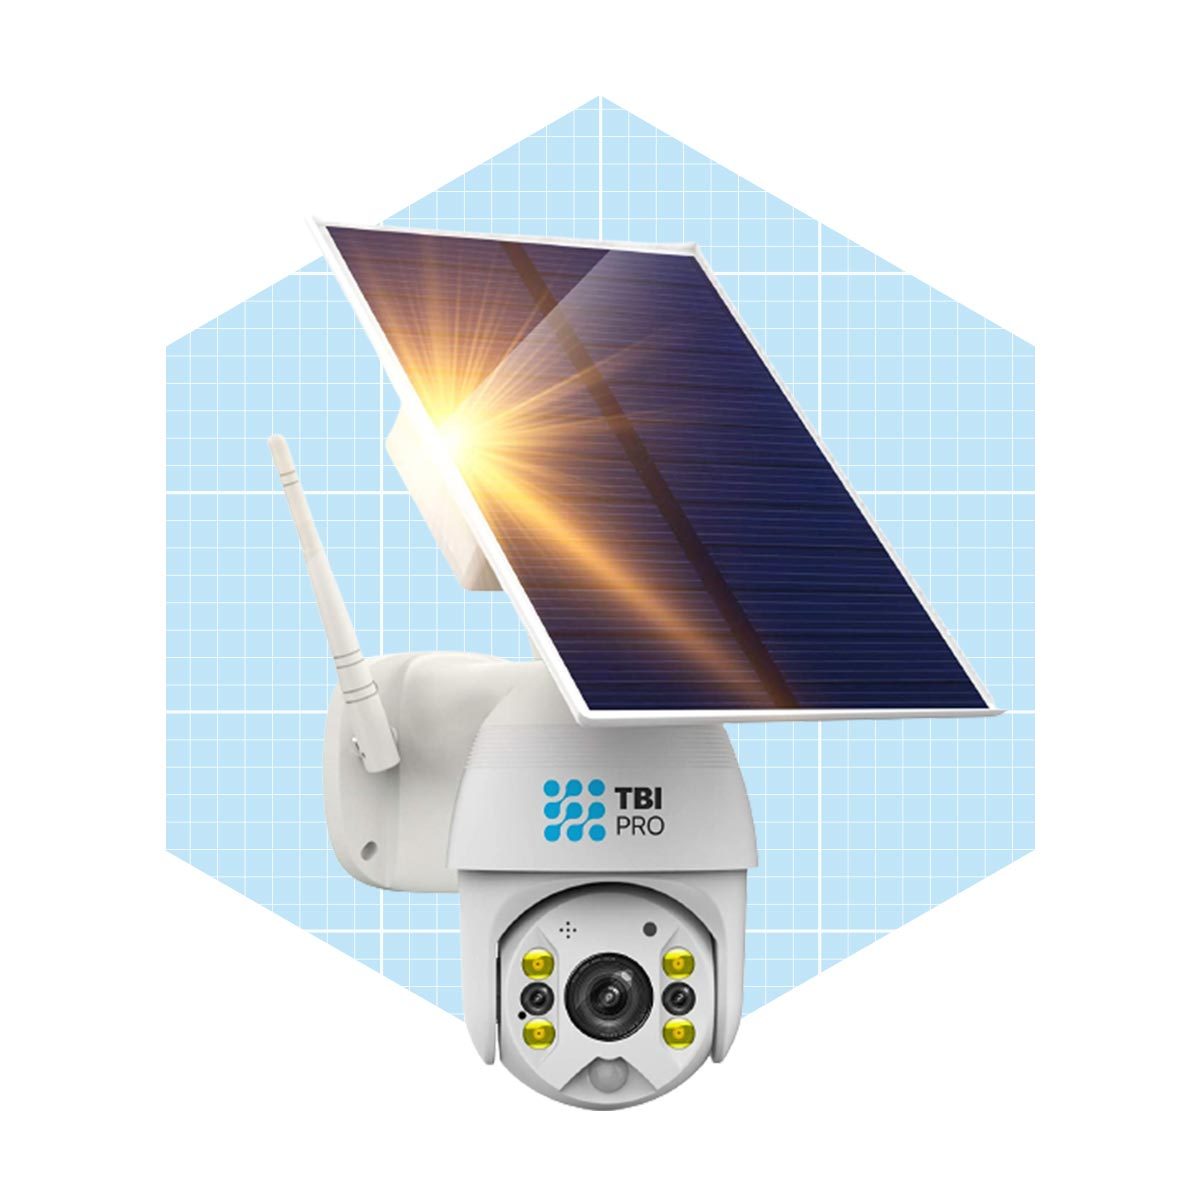 Tbi Pro Solar Security Camera